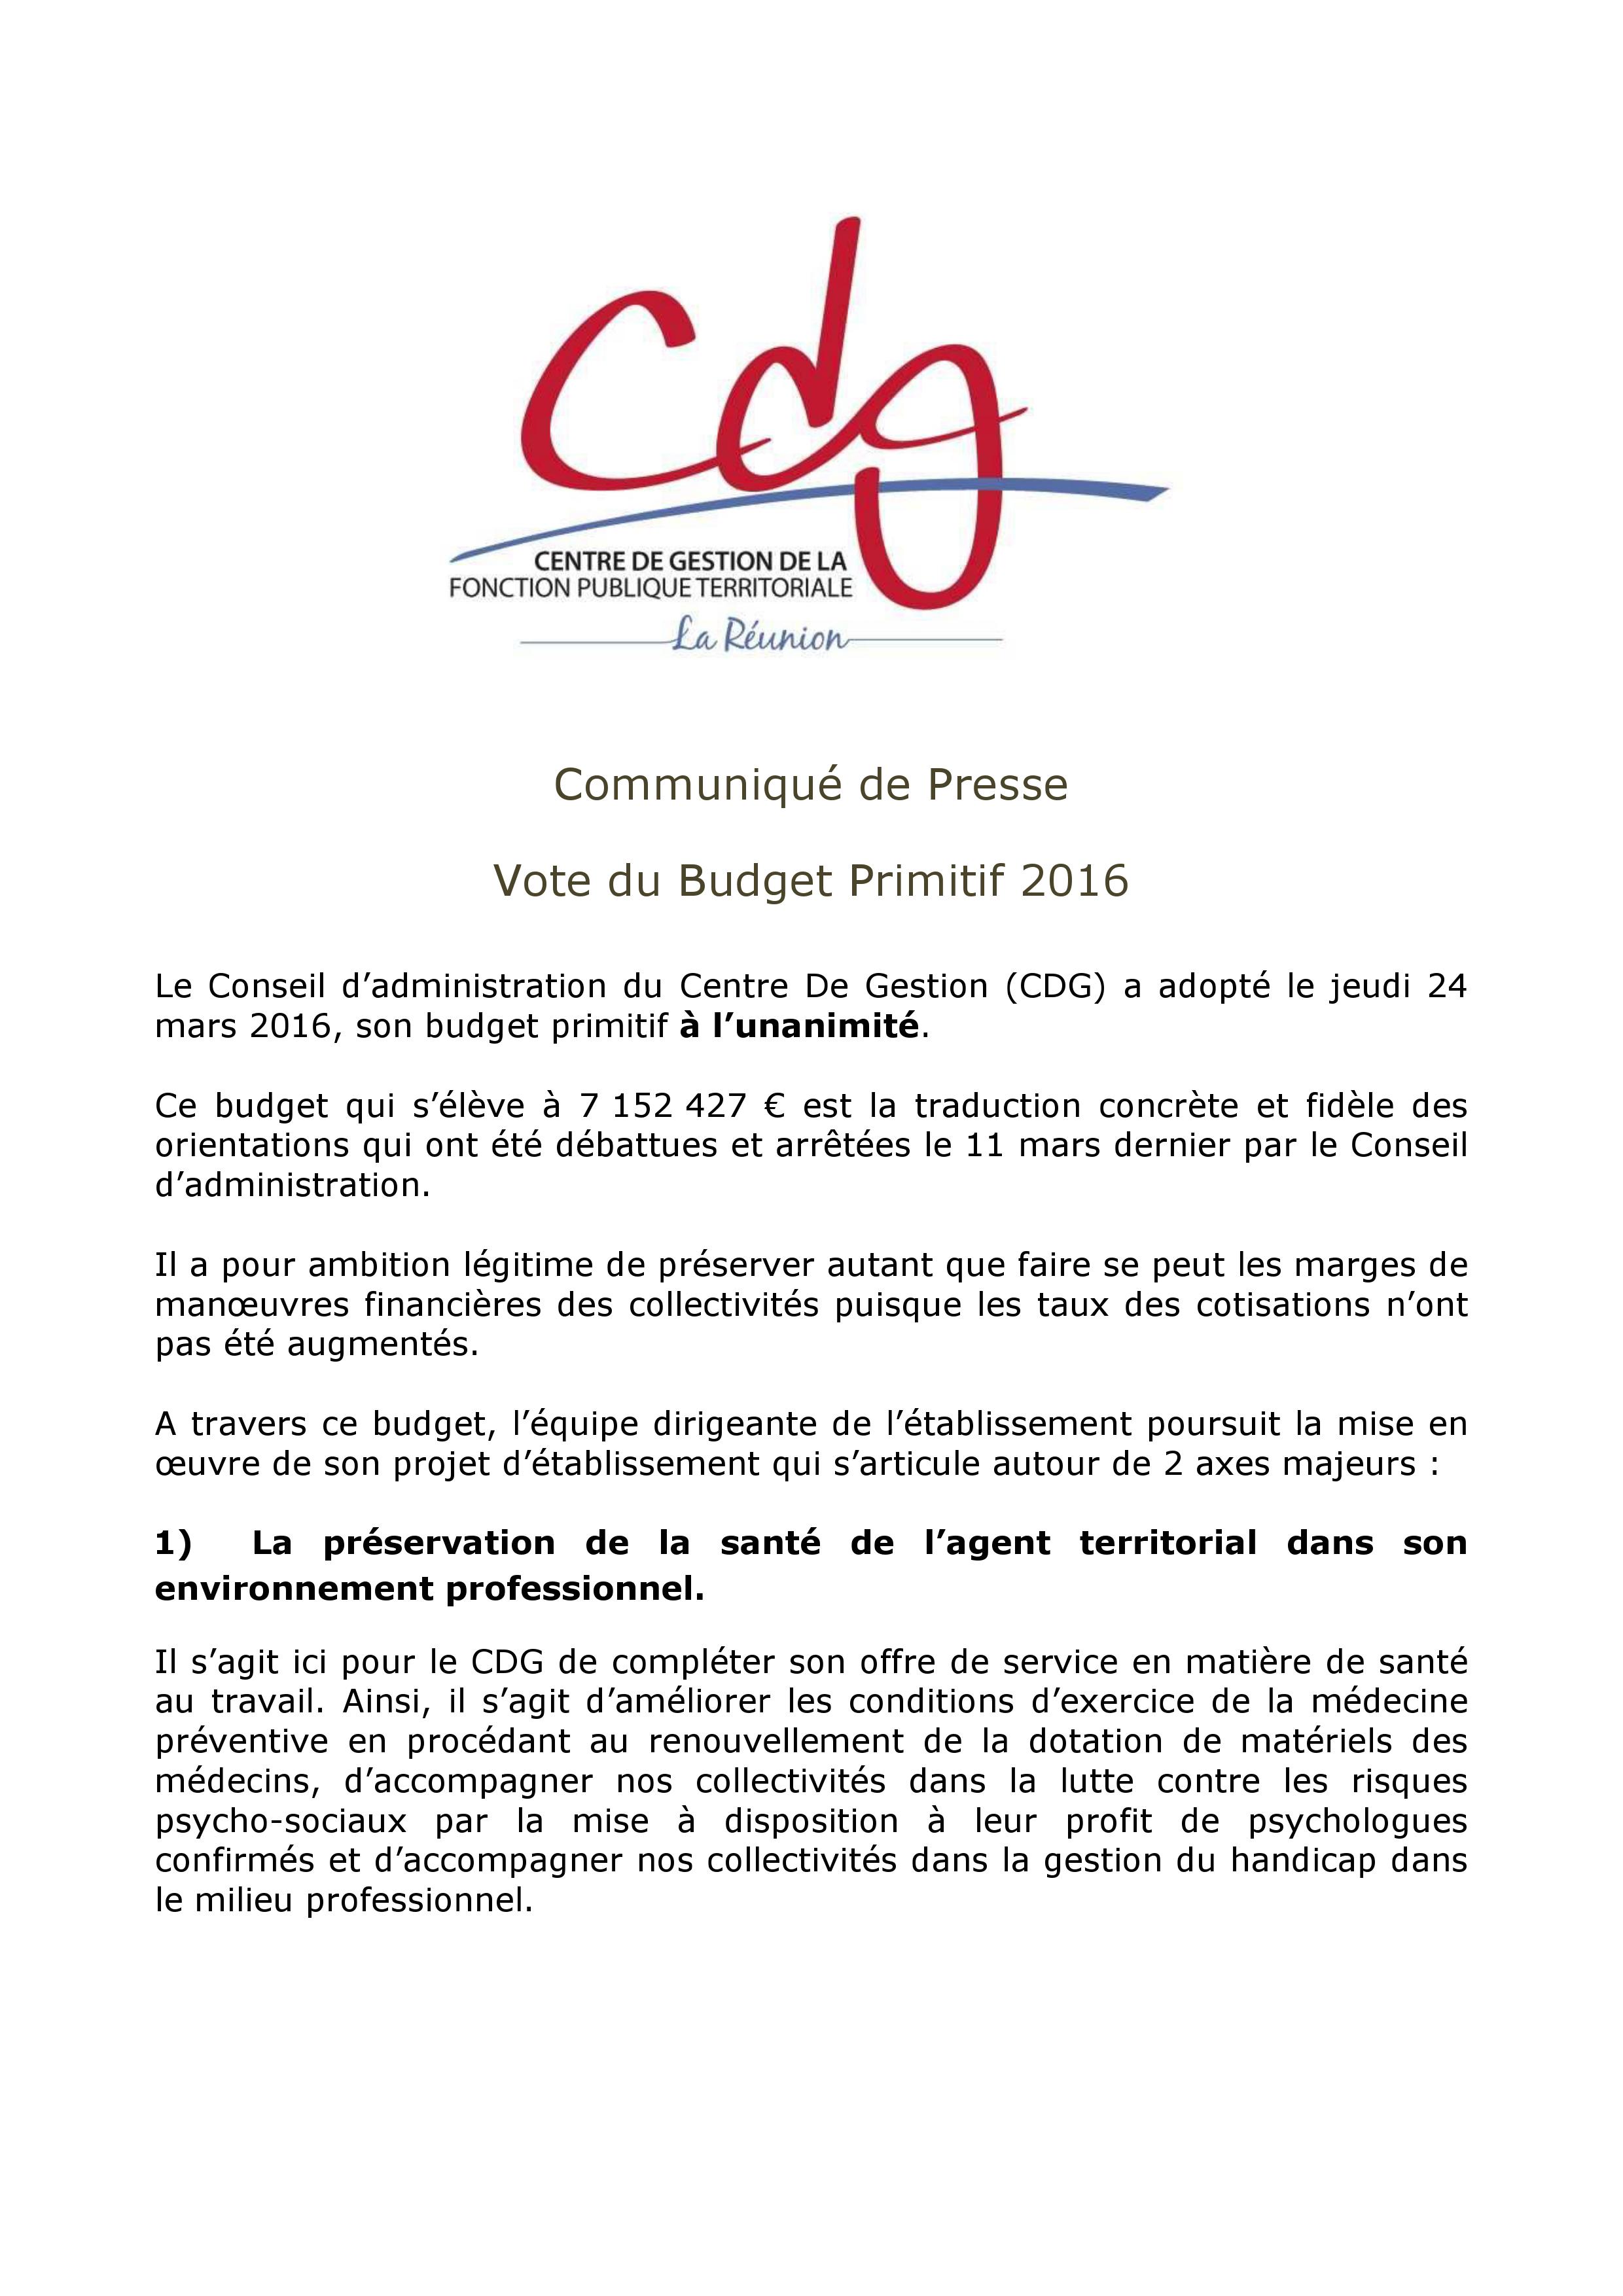 Vote du budget primitif du CDG pour l'année 2016